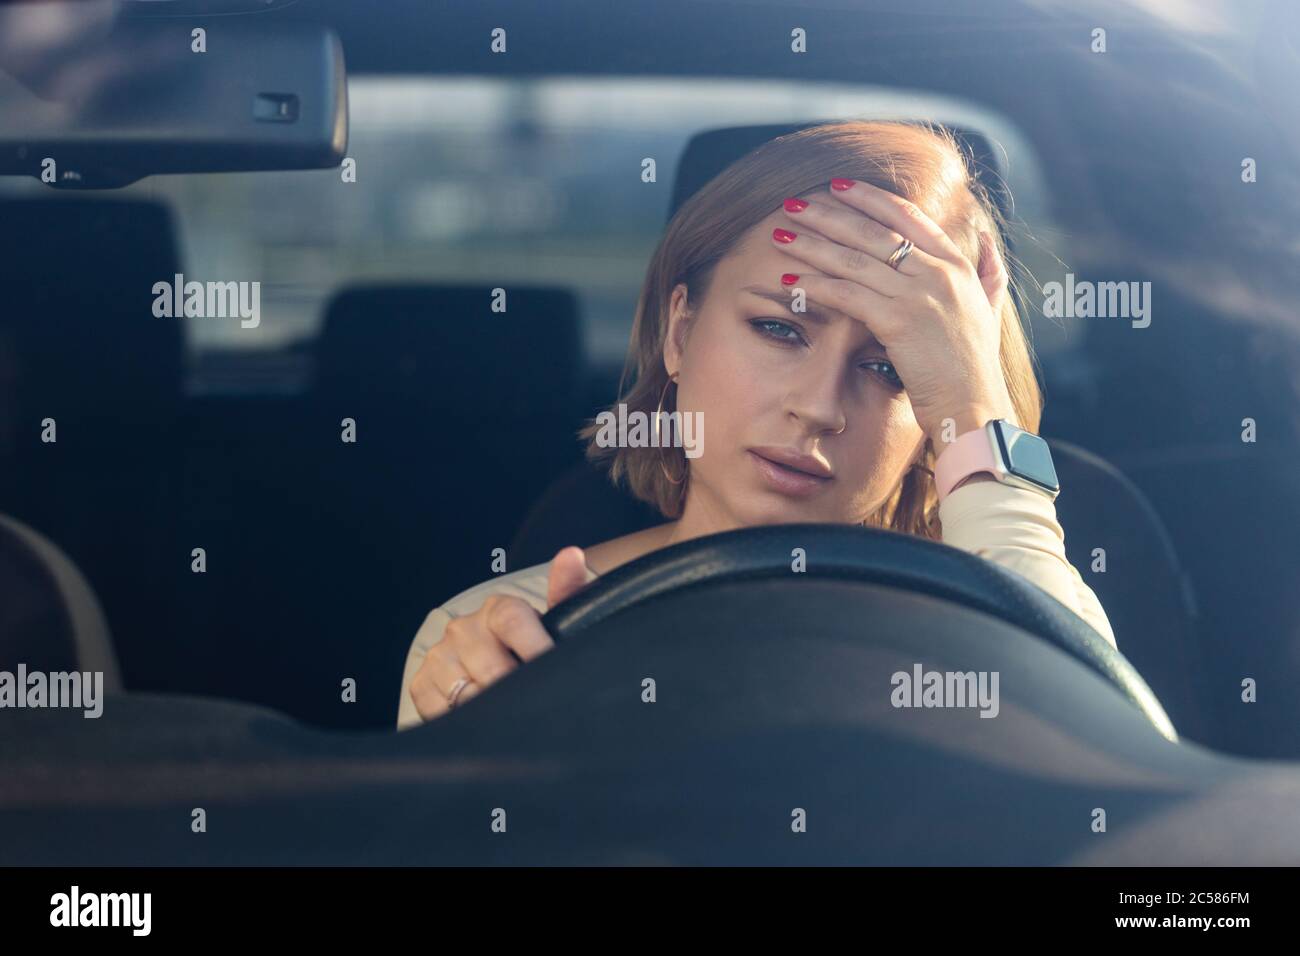 Esausta giovane driver donna seduto in macchina, sentendosi scurno emotivo dopo il lavoro, guardando la macchina fotografica, toccando la fronte. Salute mentale, stangu Foto Stock